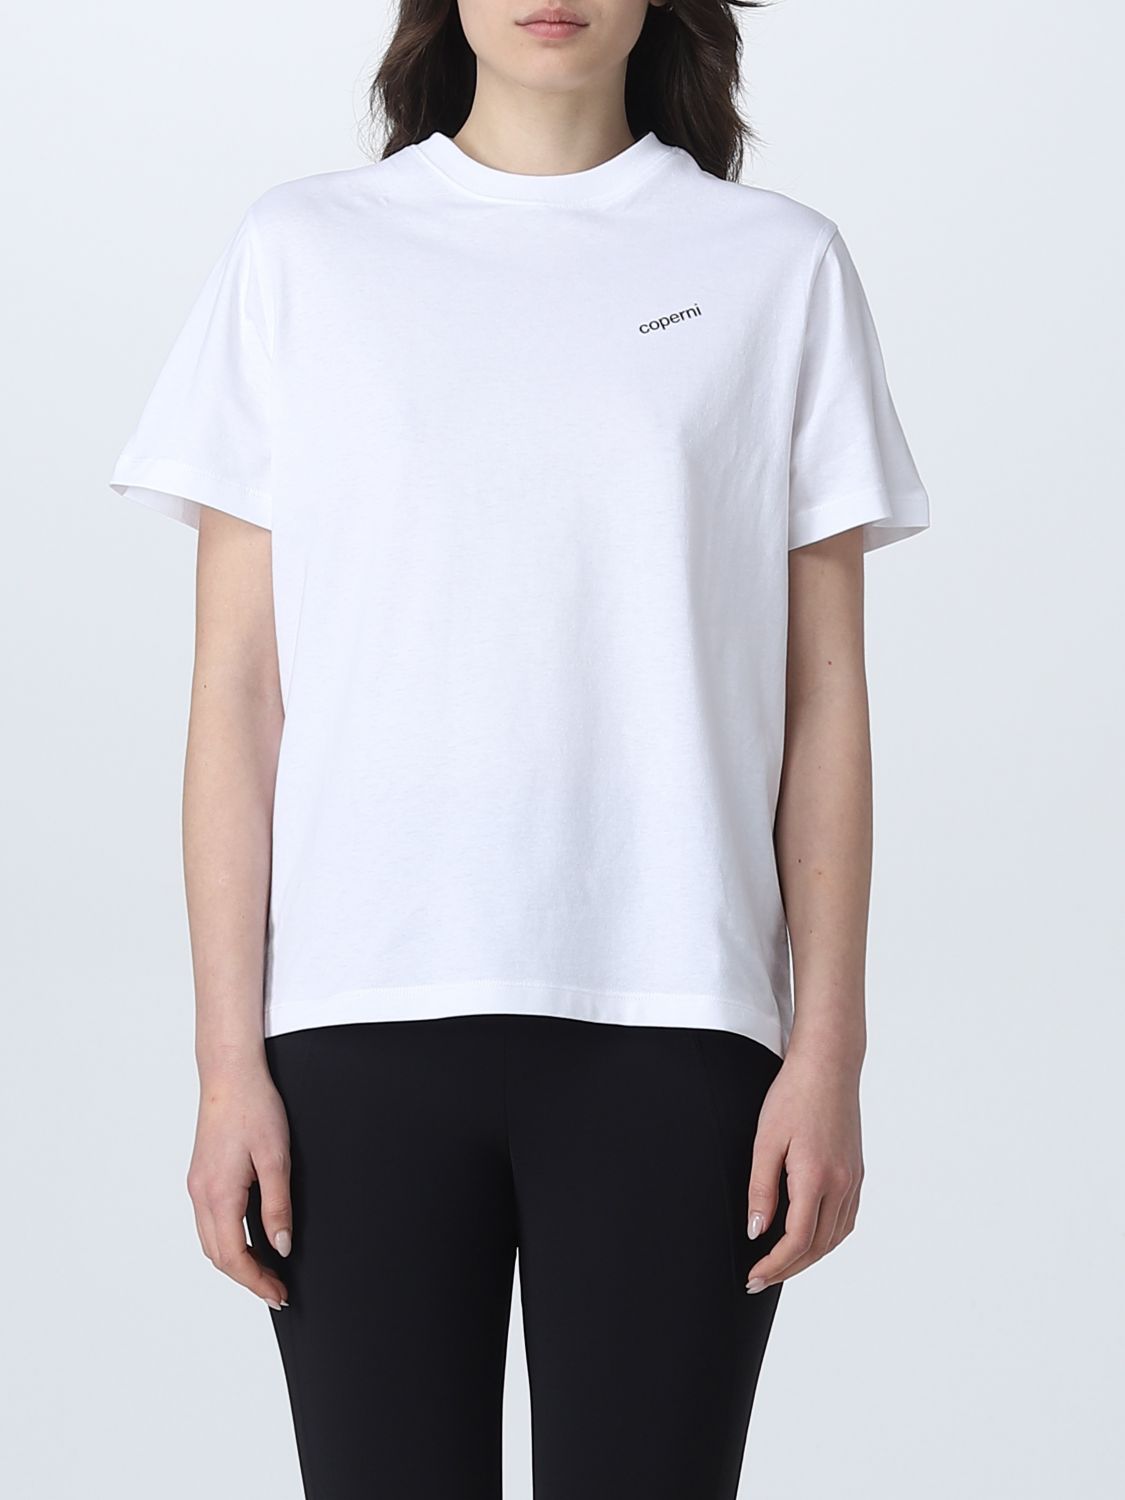 Coperni T-shirt  Woman Colour White